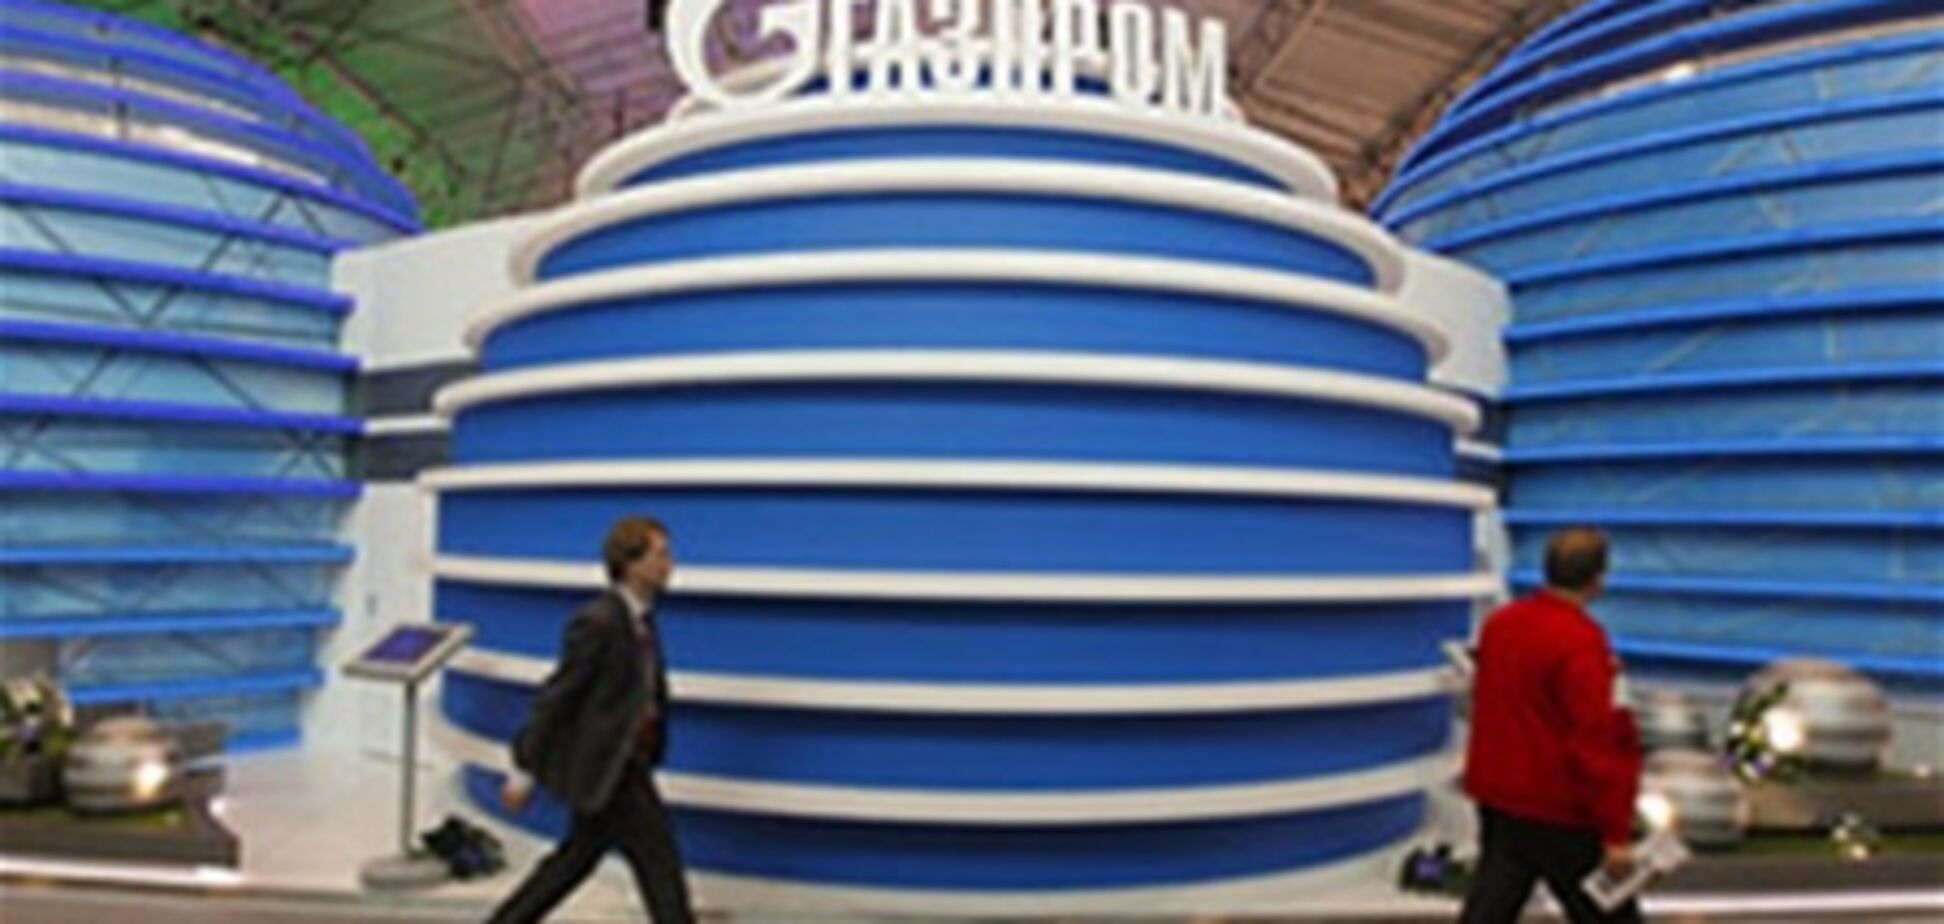 В 'Газпроме' закончилась туалетная бумага - в ход пошли документы